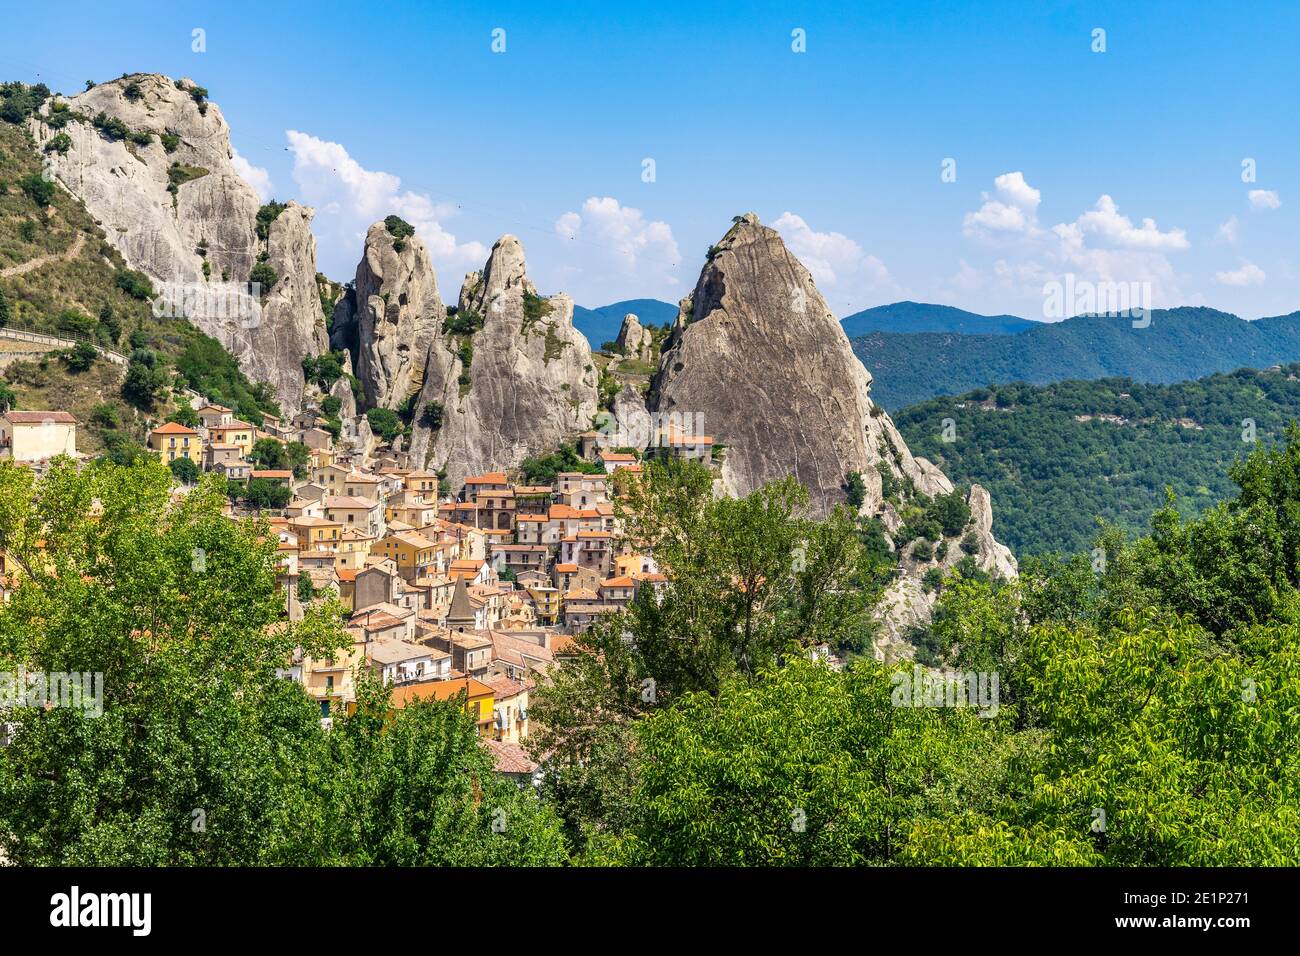 Vue sur Castelmezzano, un village typique sous les sommets de la Dolomiti lucane dans la région de Basilicate, en Italie Banque D'Images